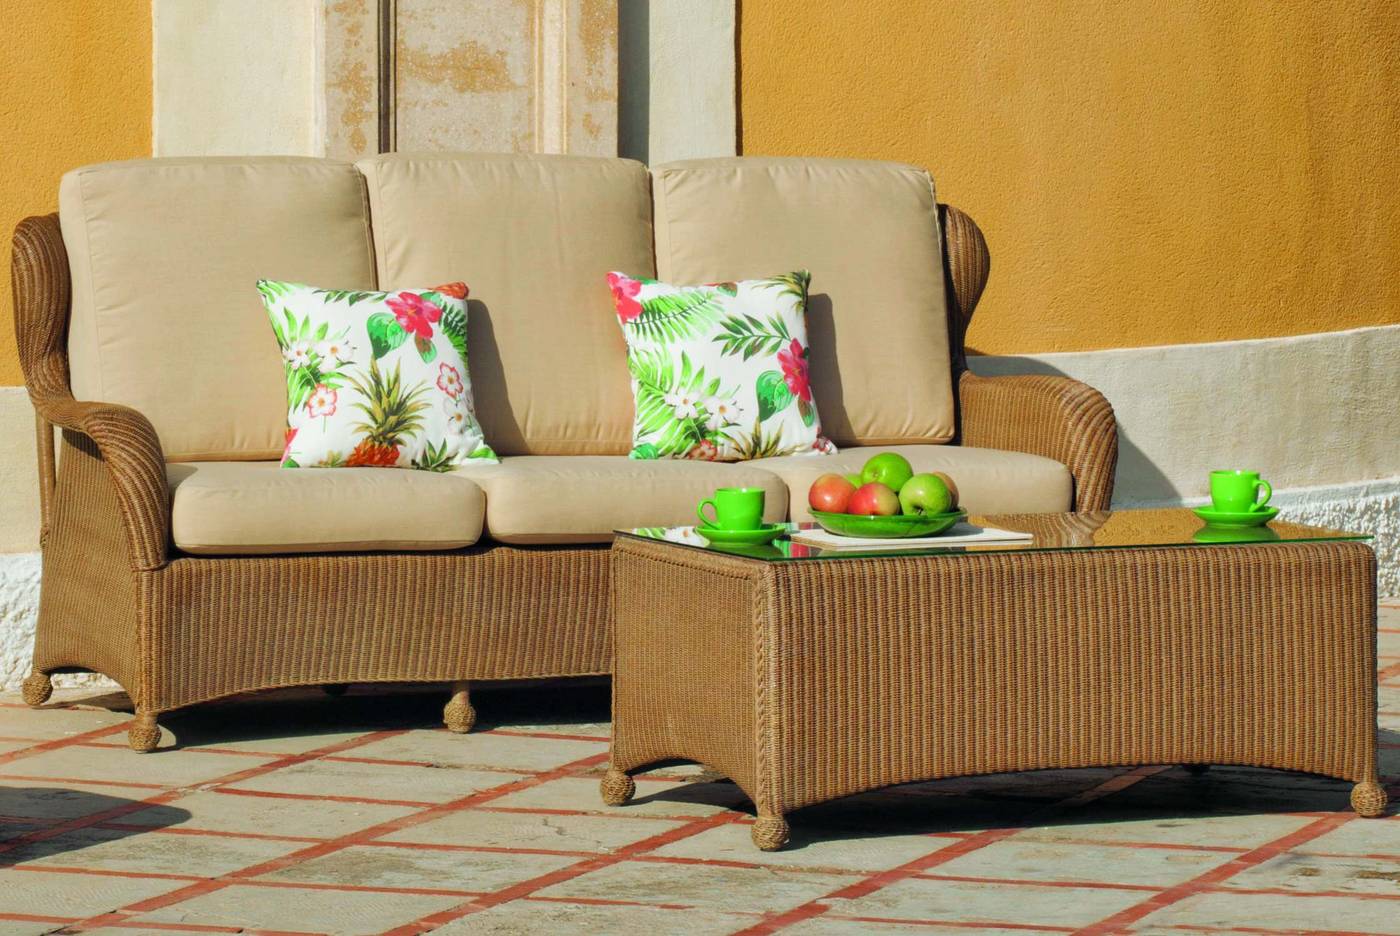 Set Loom Lux Banué-8 - Conjunto de fibra natural reforzada para jardín. Formada por: sofá 3 plazas + 2 sillones + mesa de centro + cojines